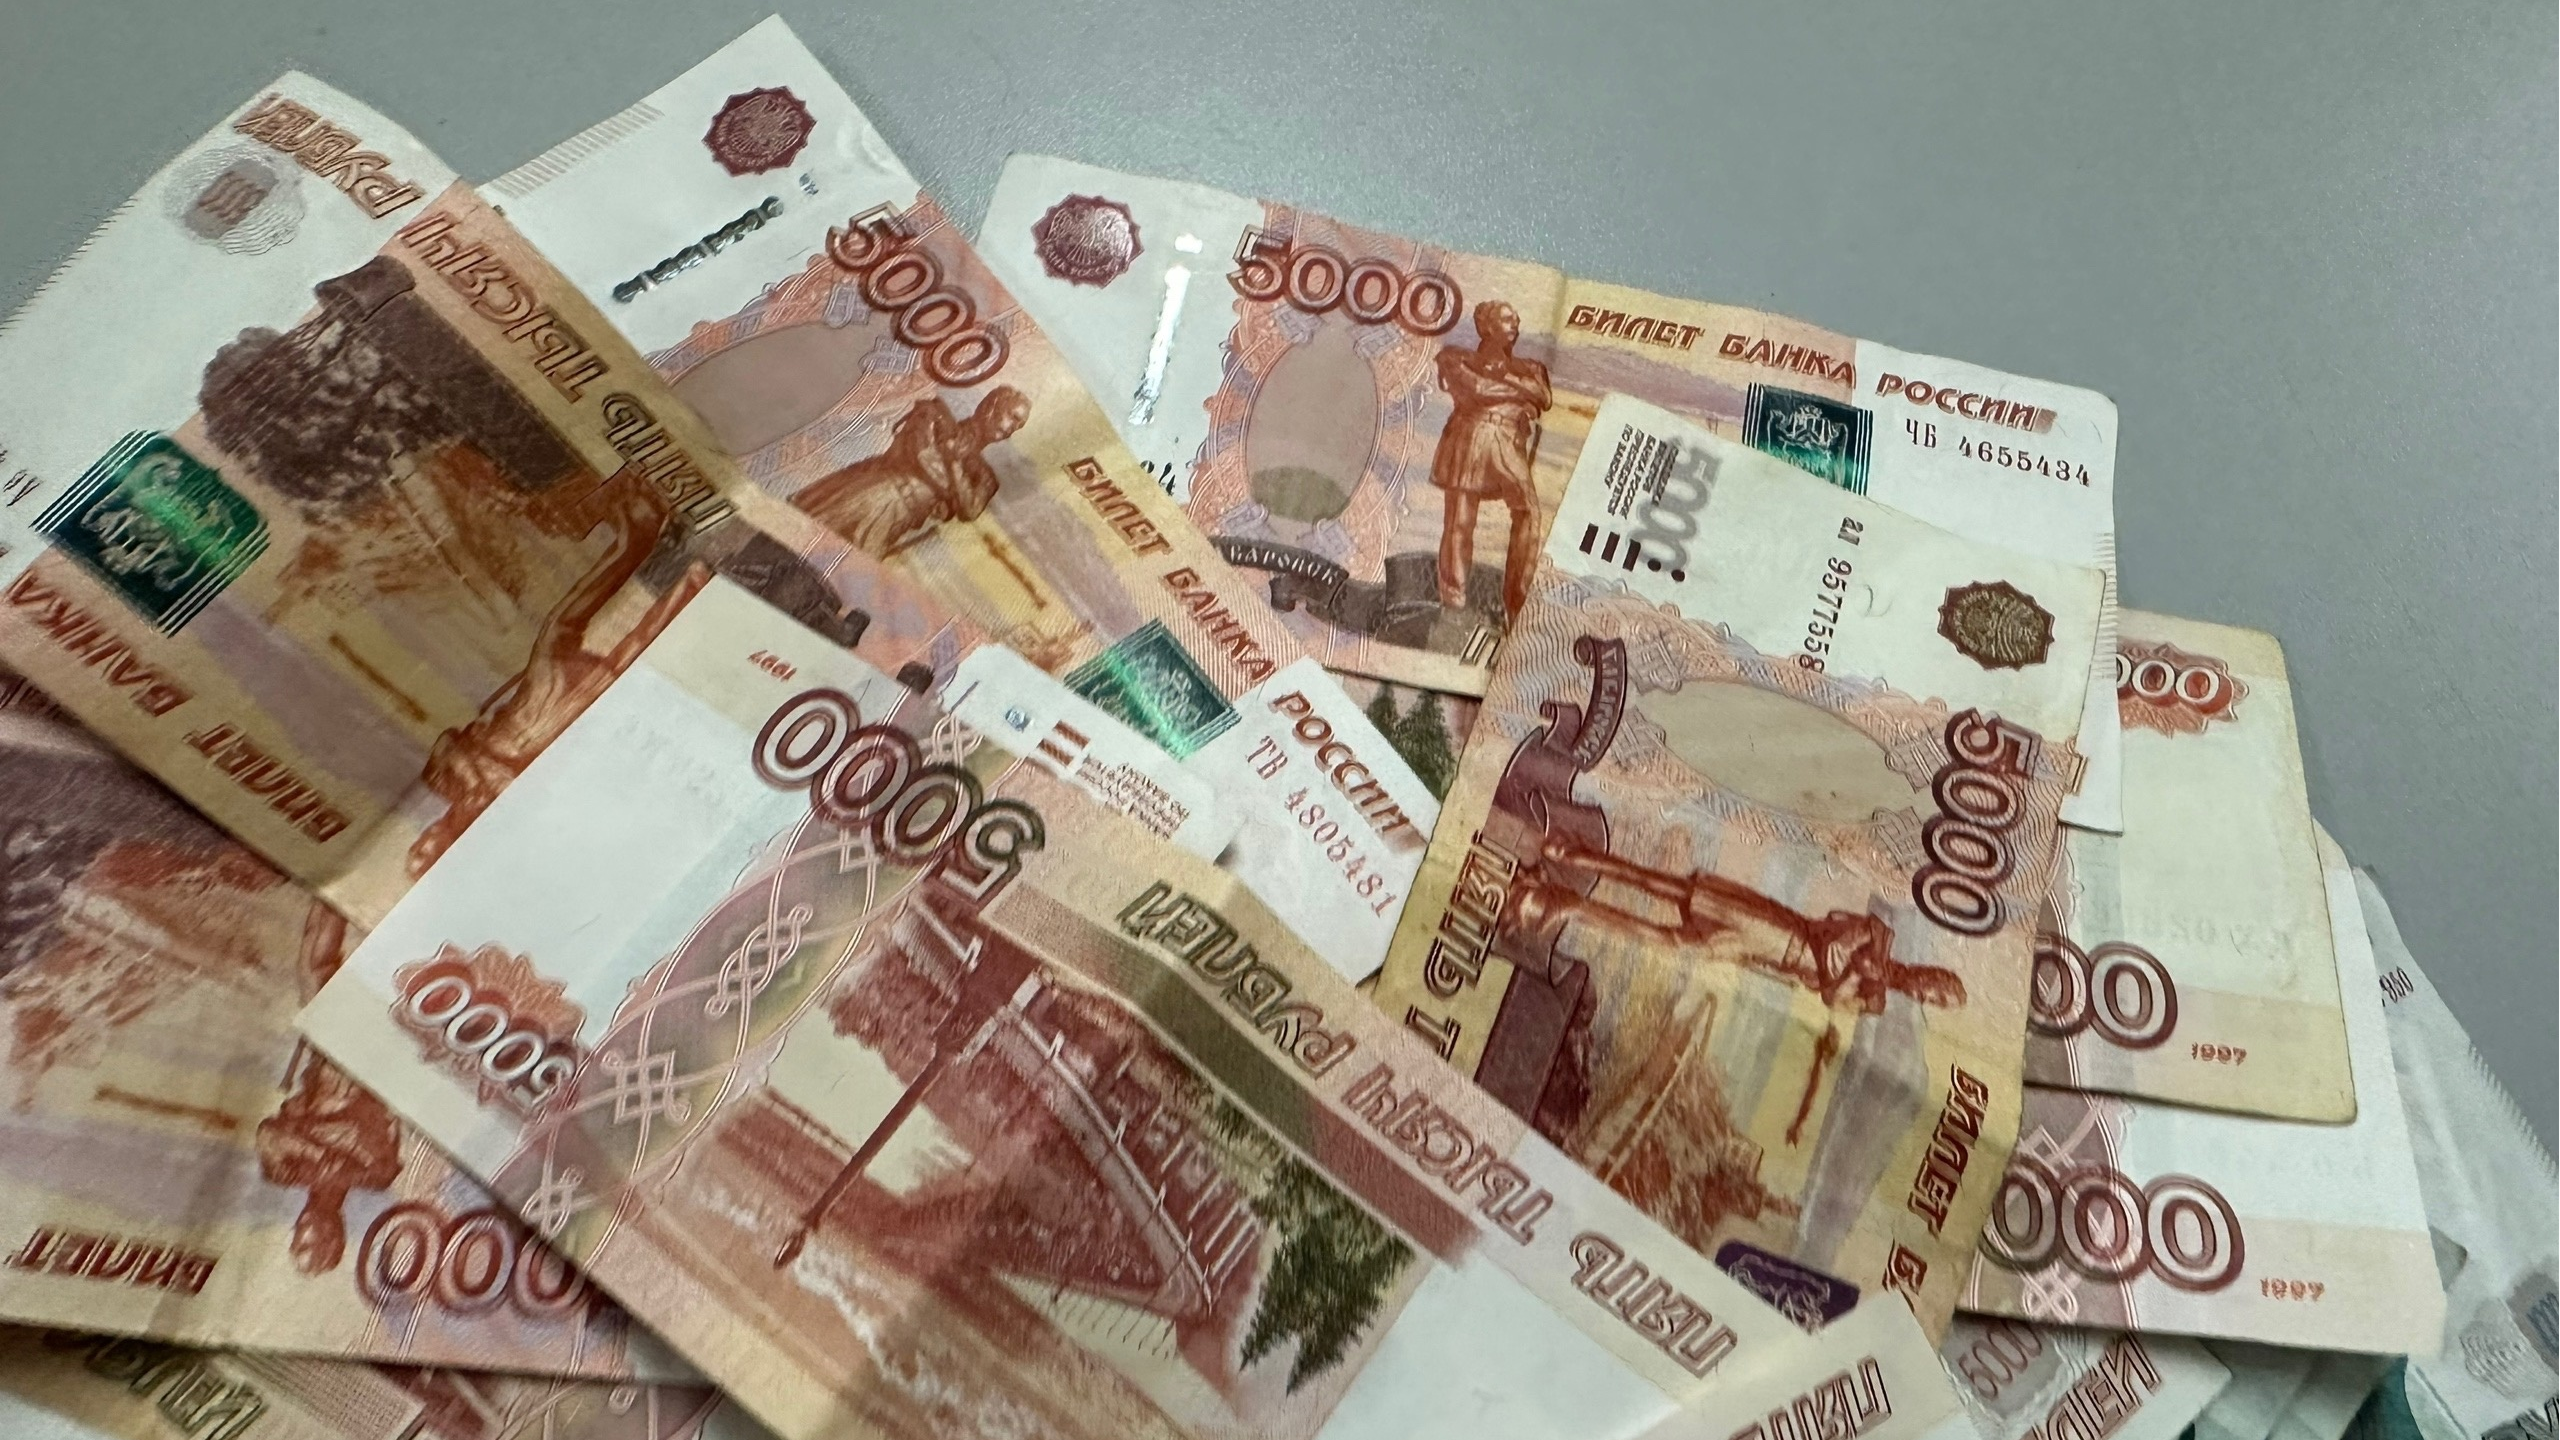 Ульяновец в погоне за легким заработком лишился 5 млн рублей